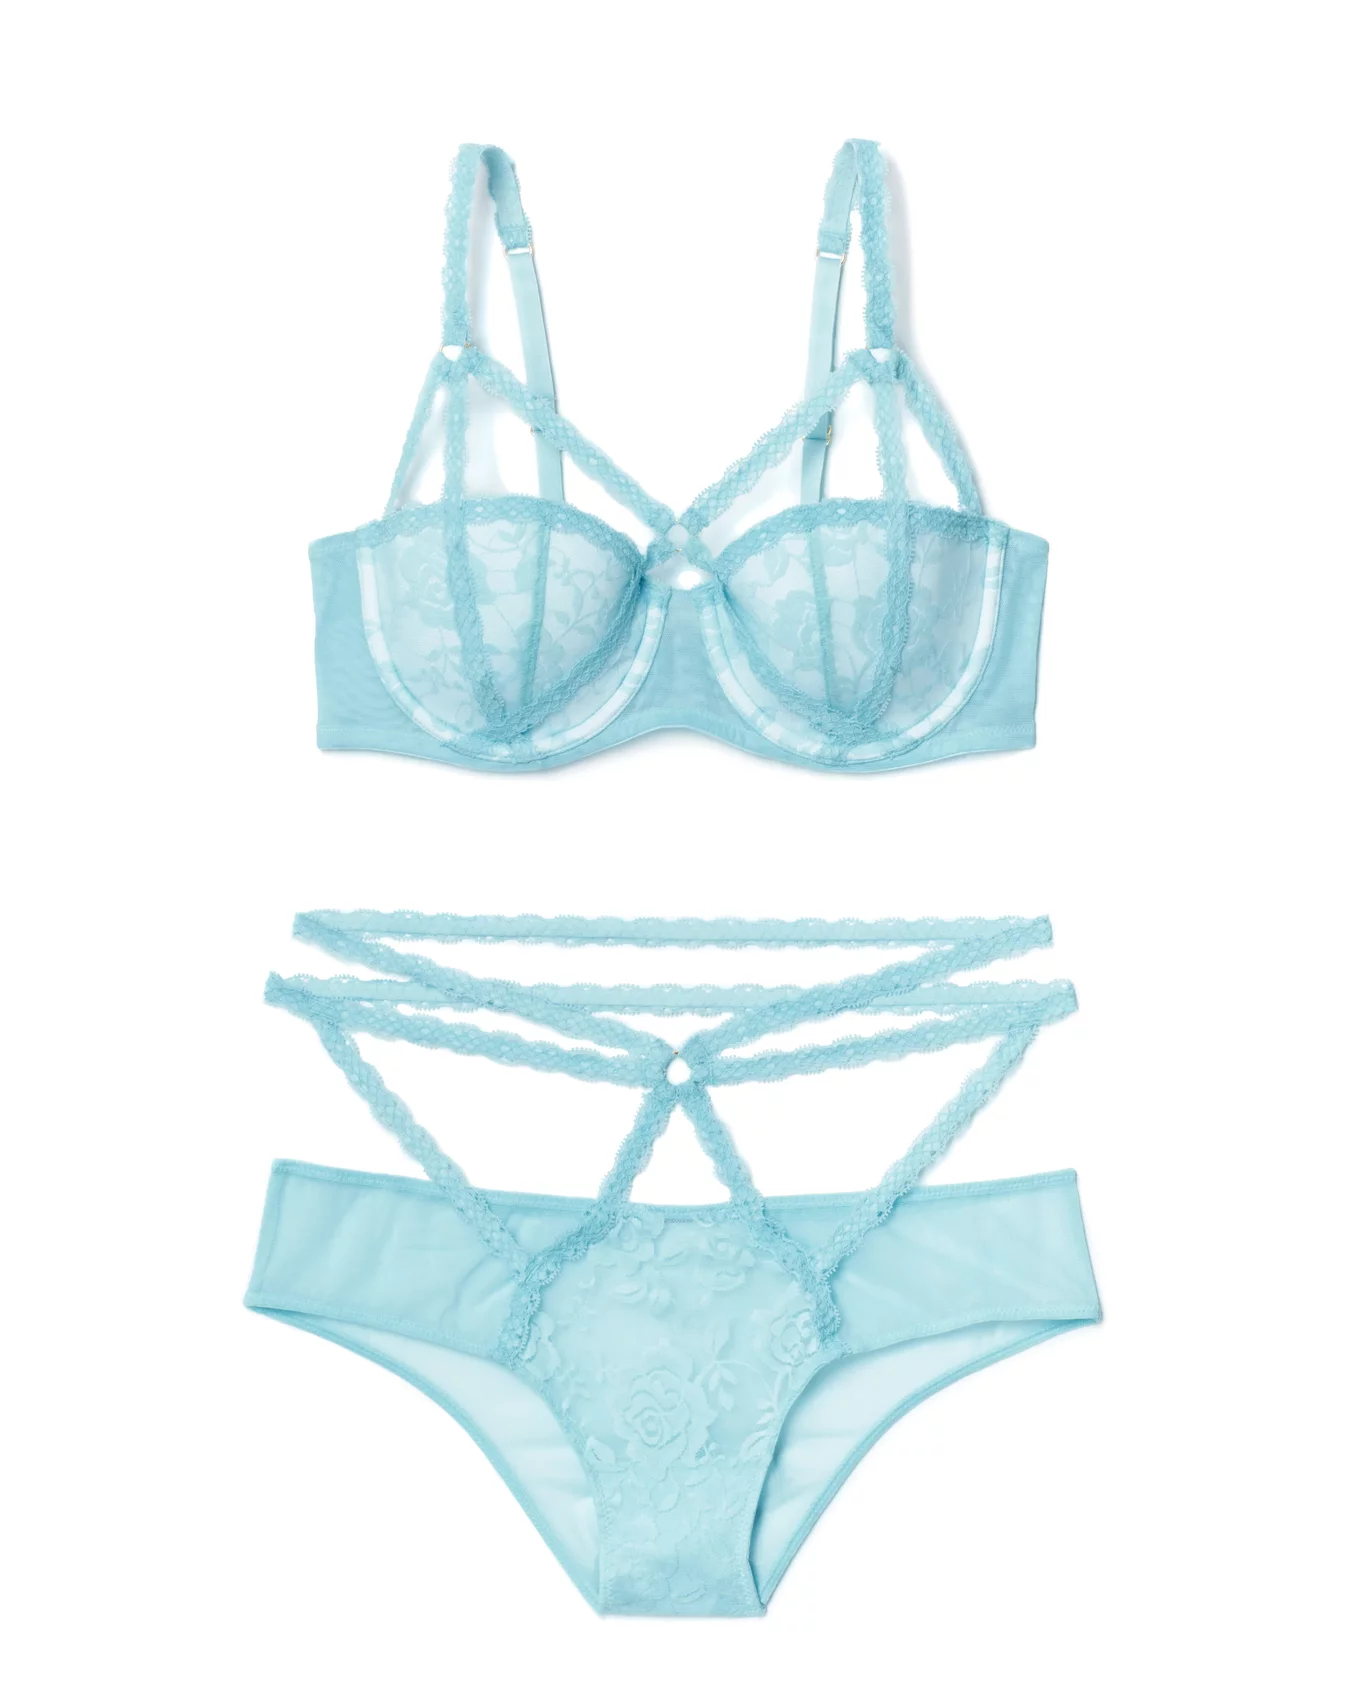 Buy online Blue Nylon Balconette Bra from lingerie for Women by